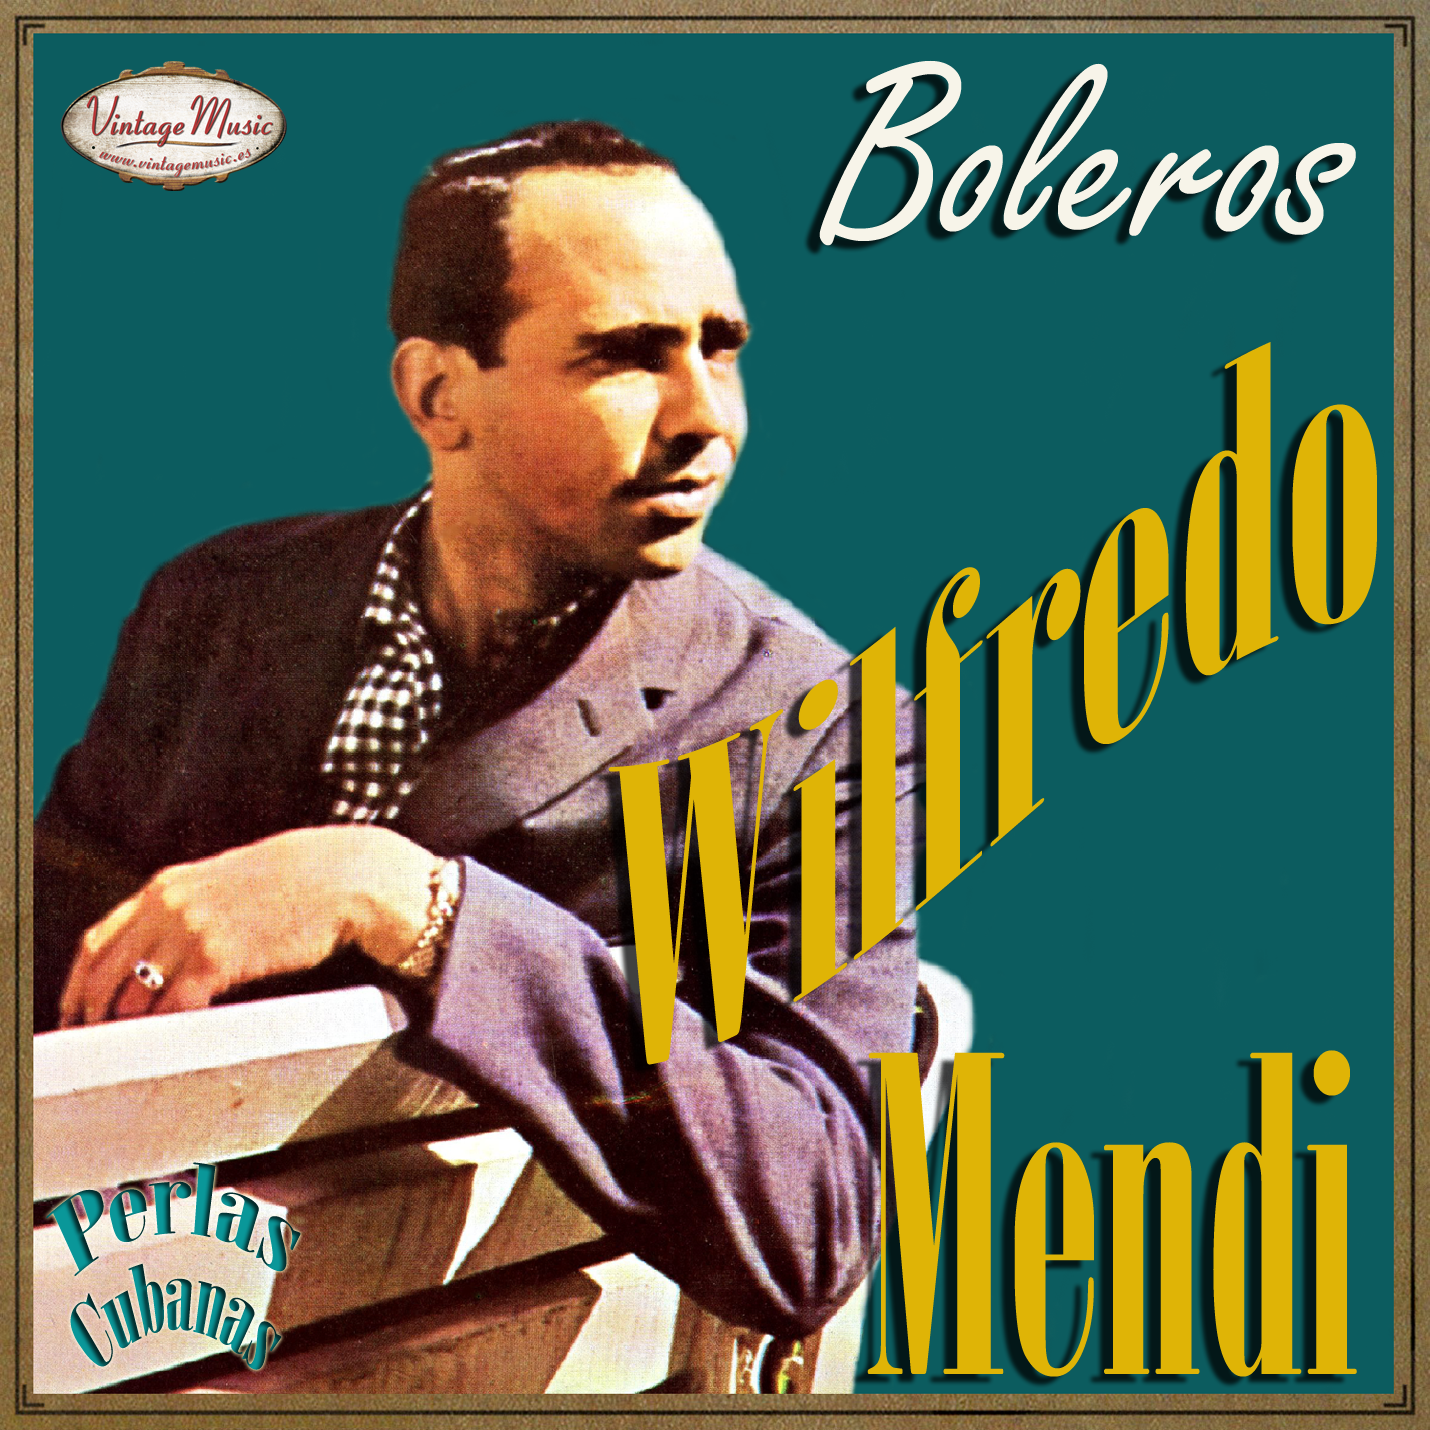 Wilfredo Mendi (Colección Perlas Cubanas - #168)